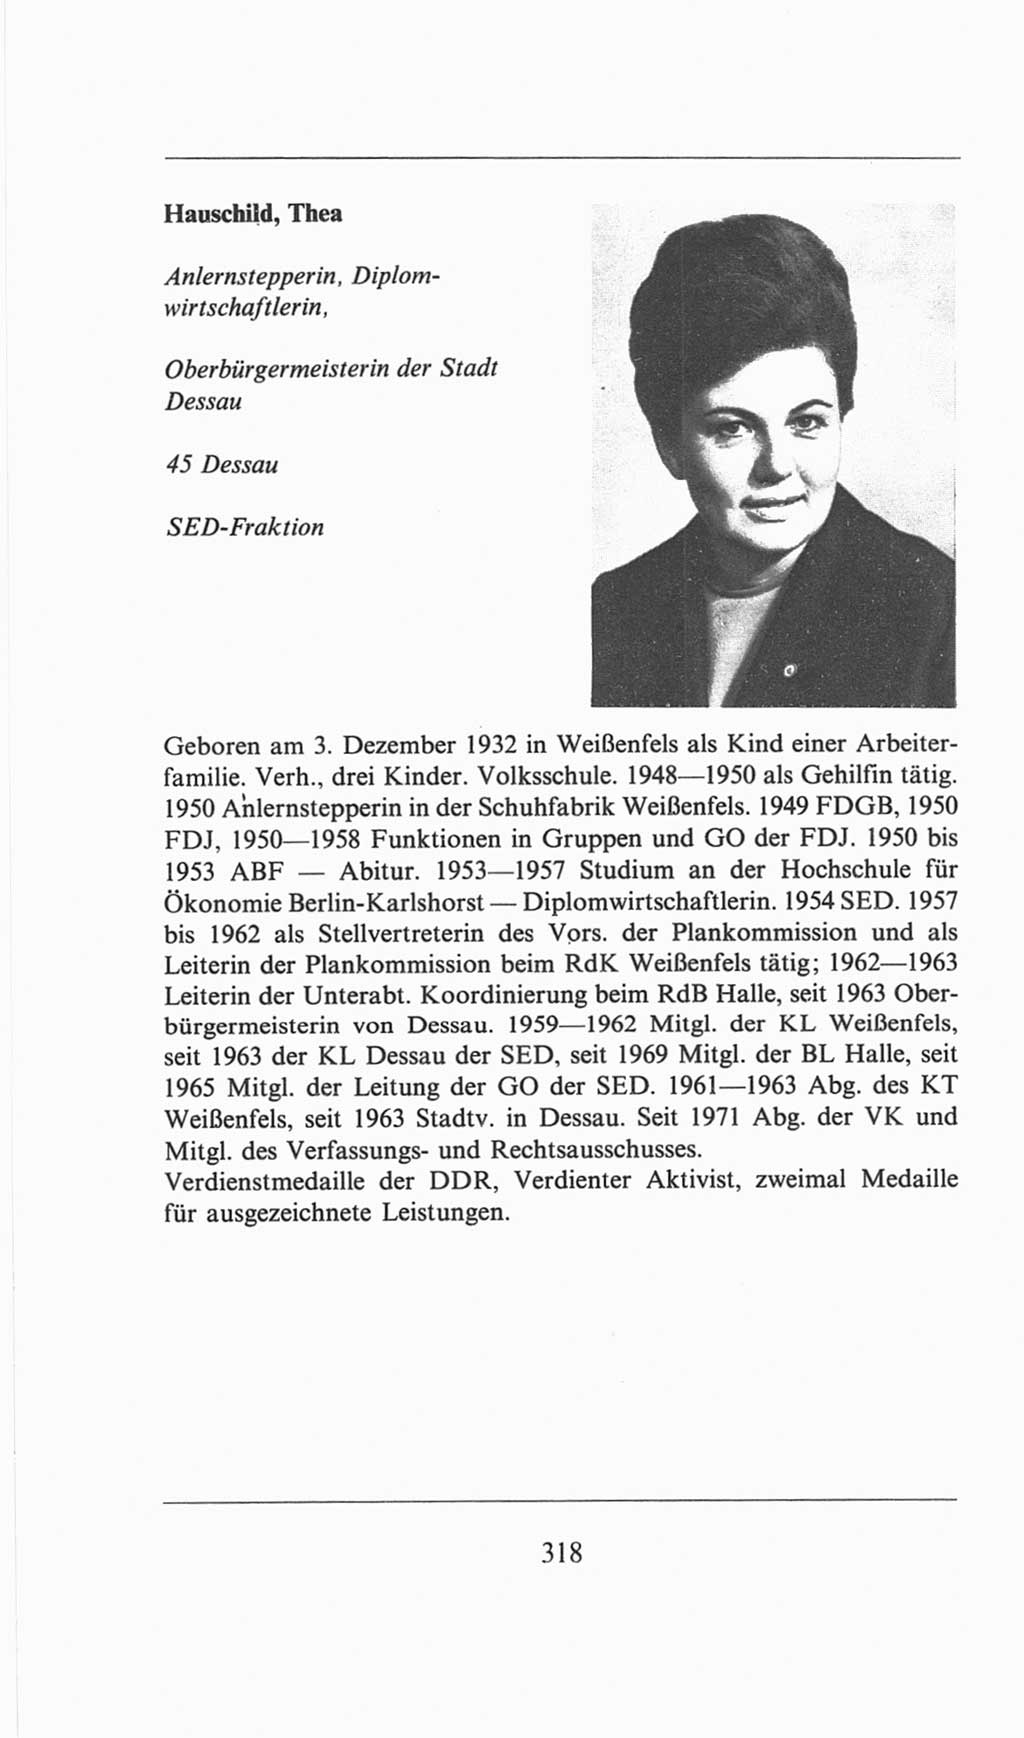 Volkskammer (VK) der Deutschen Demokratischen Republik (DDR), 6. Wahlperiode 1971-1976, Seite 318 (VK. DDR 6. WP. 1971-1976, S. 318)